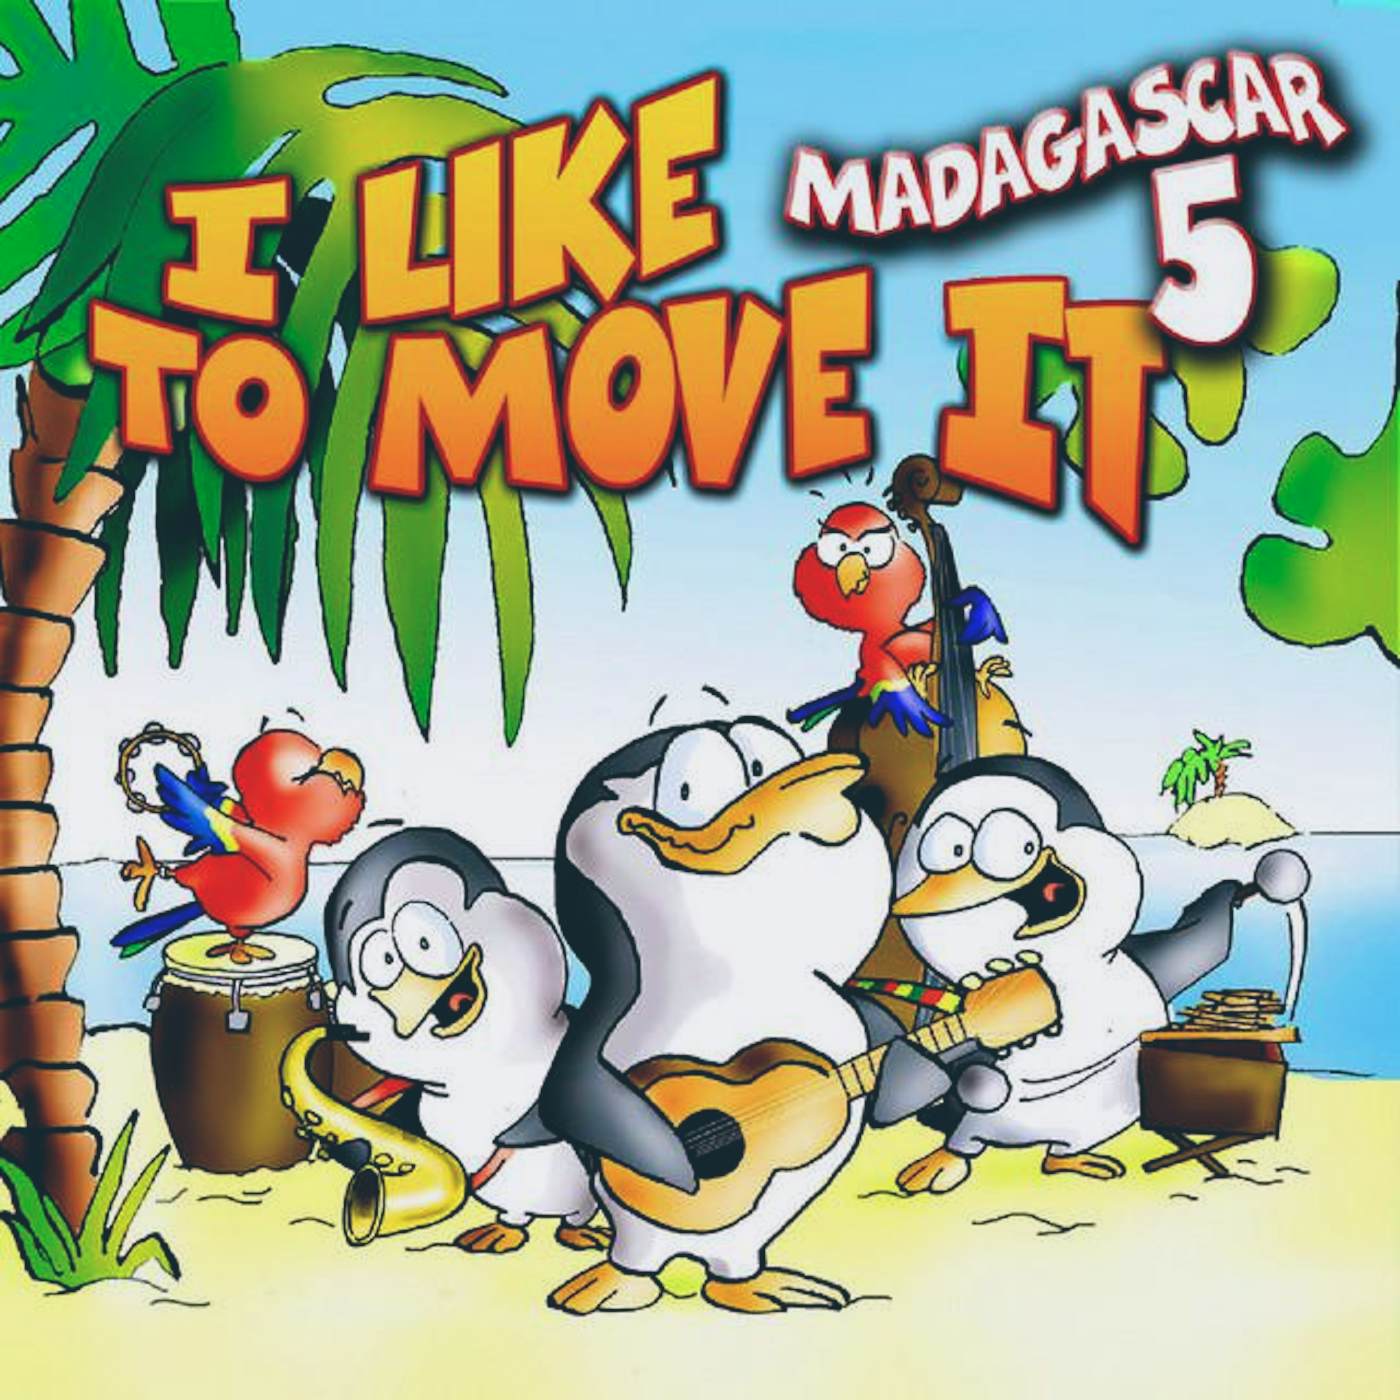 Madagascar i like